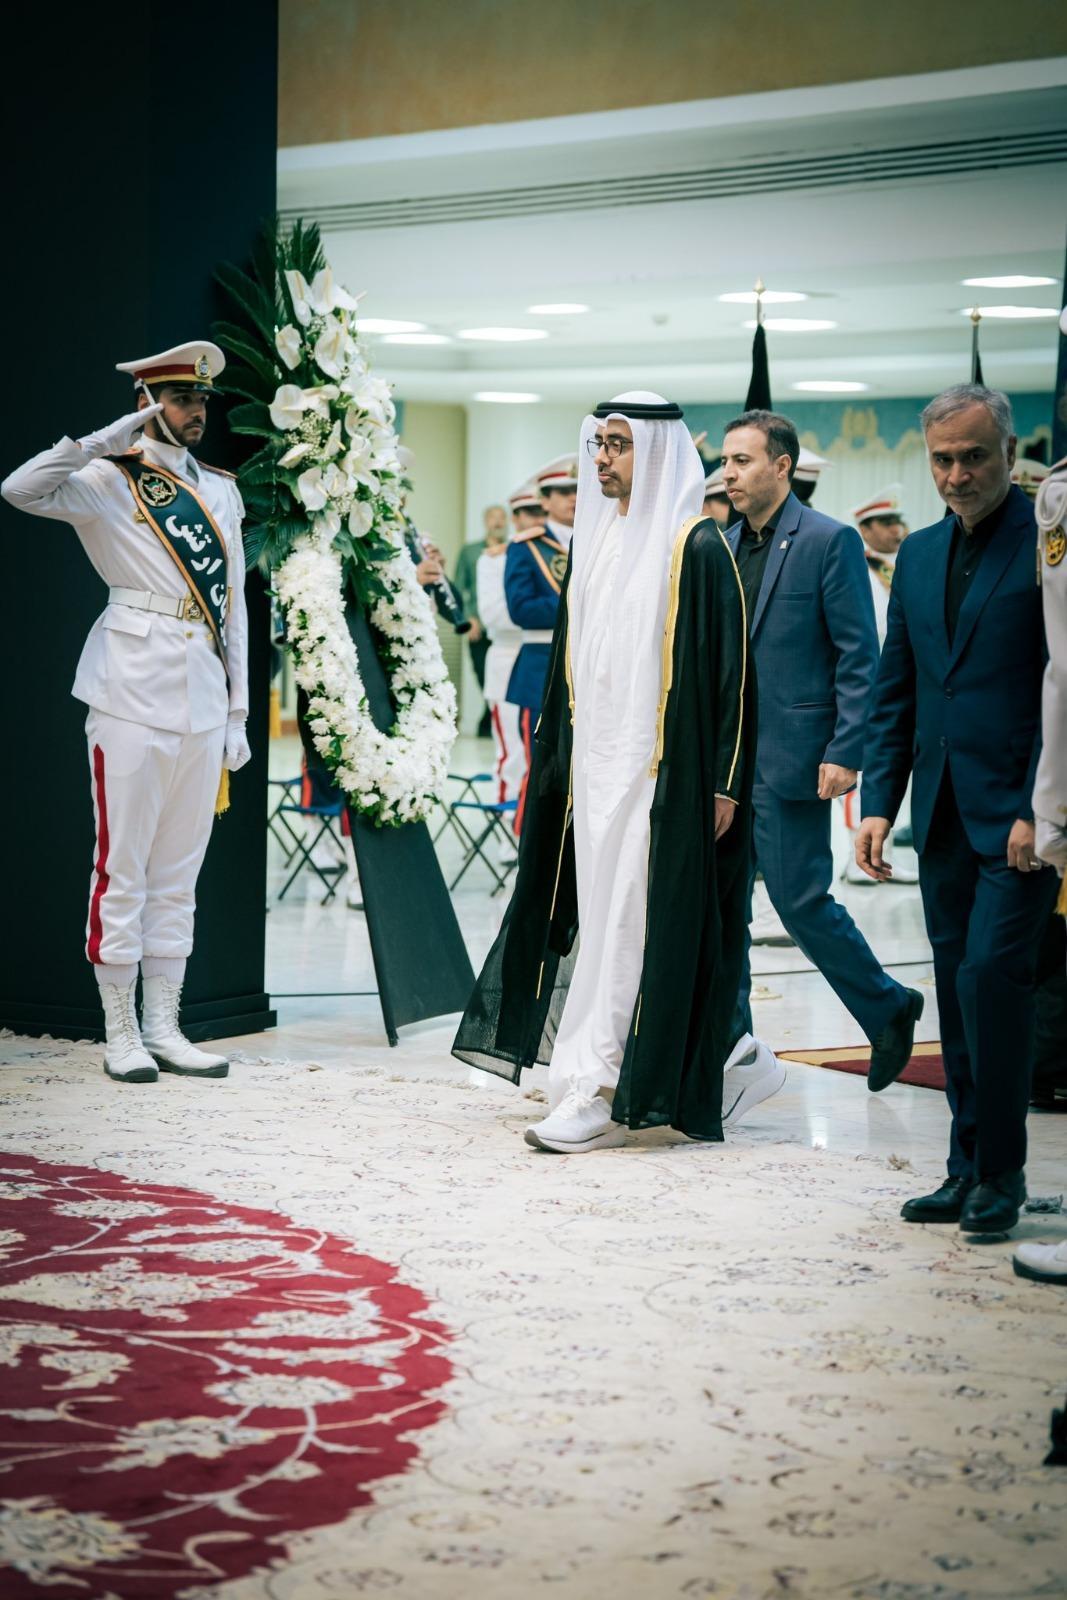 کتونی وزیر خارجه امارات (عکس)